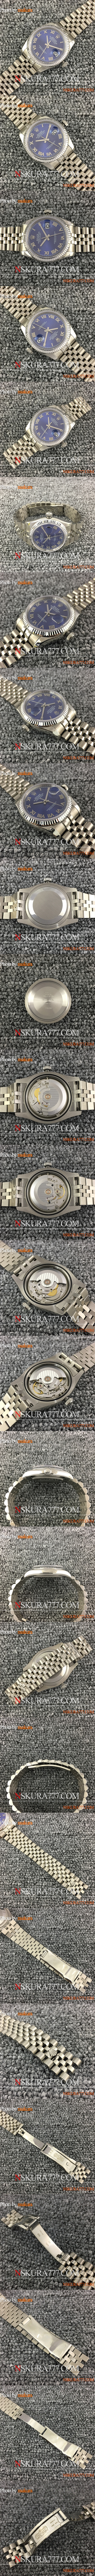 スーパーコピー時計ロレックス デイトジャスト 116234 v2バージョン (BP工場) - ウインドウを閉じる